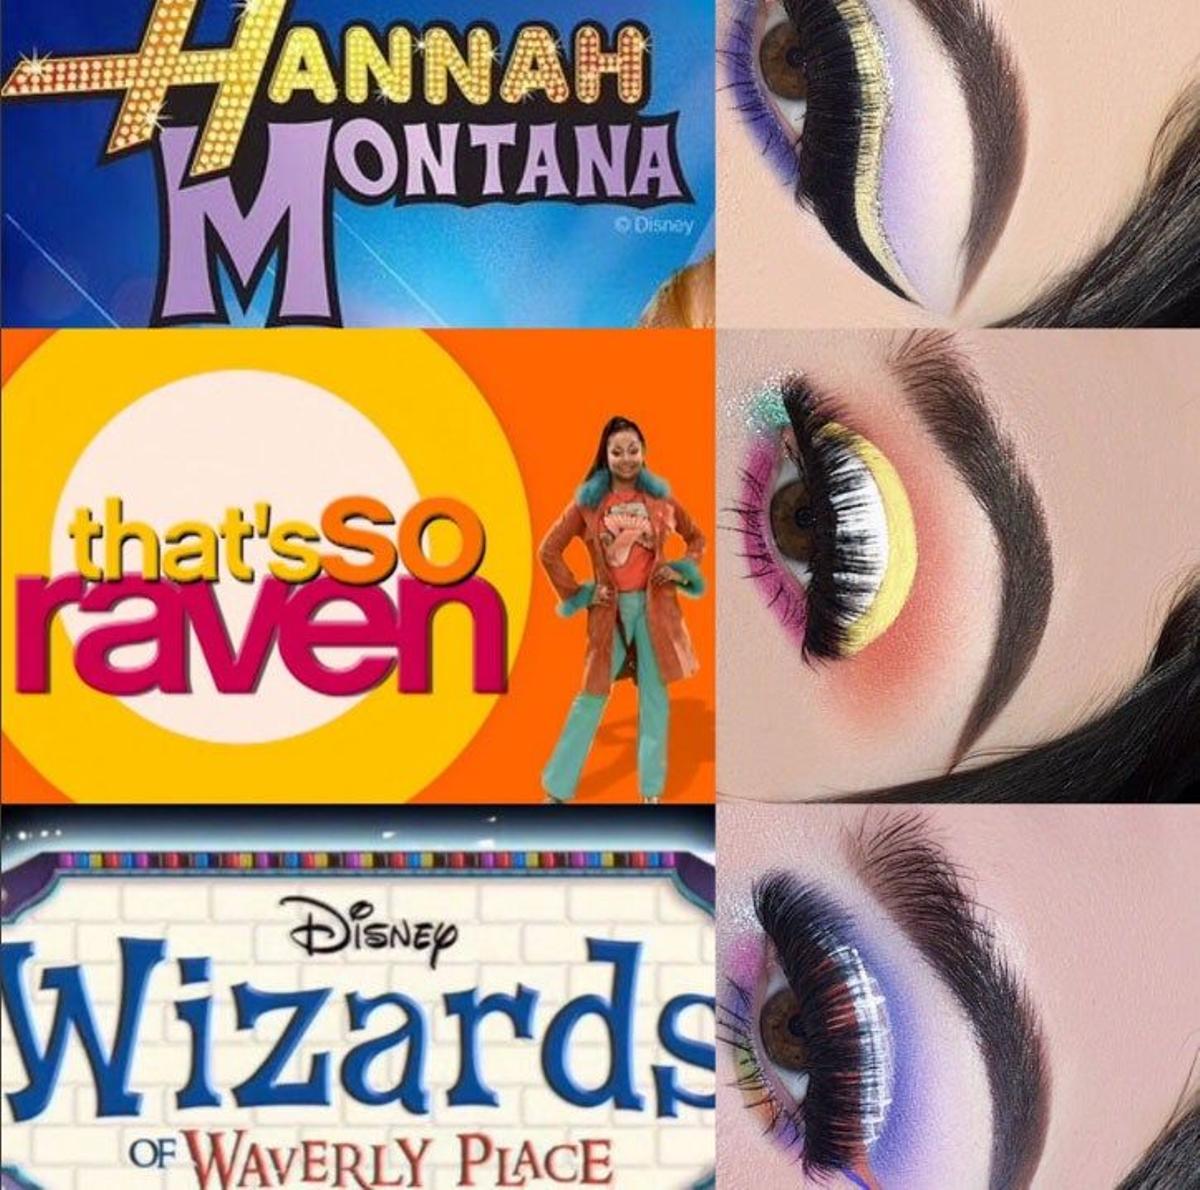 Maquillaje inspirado en personajes Disney